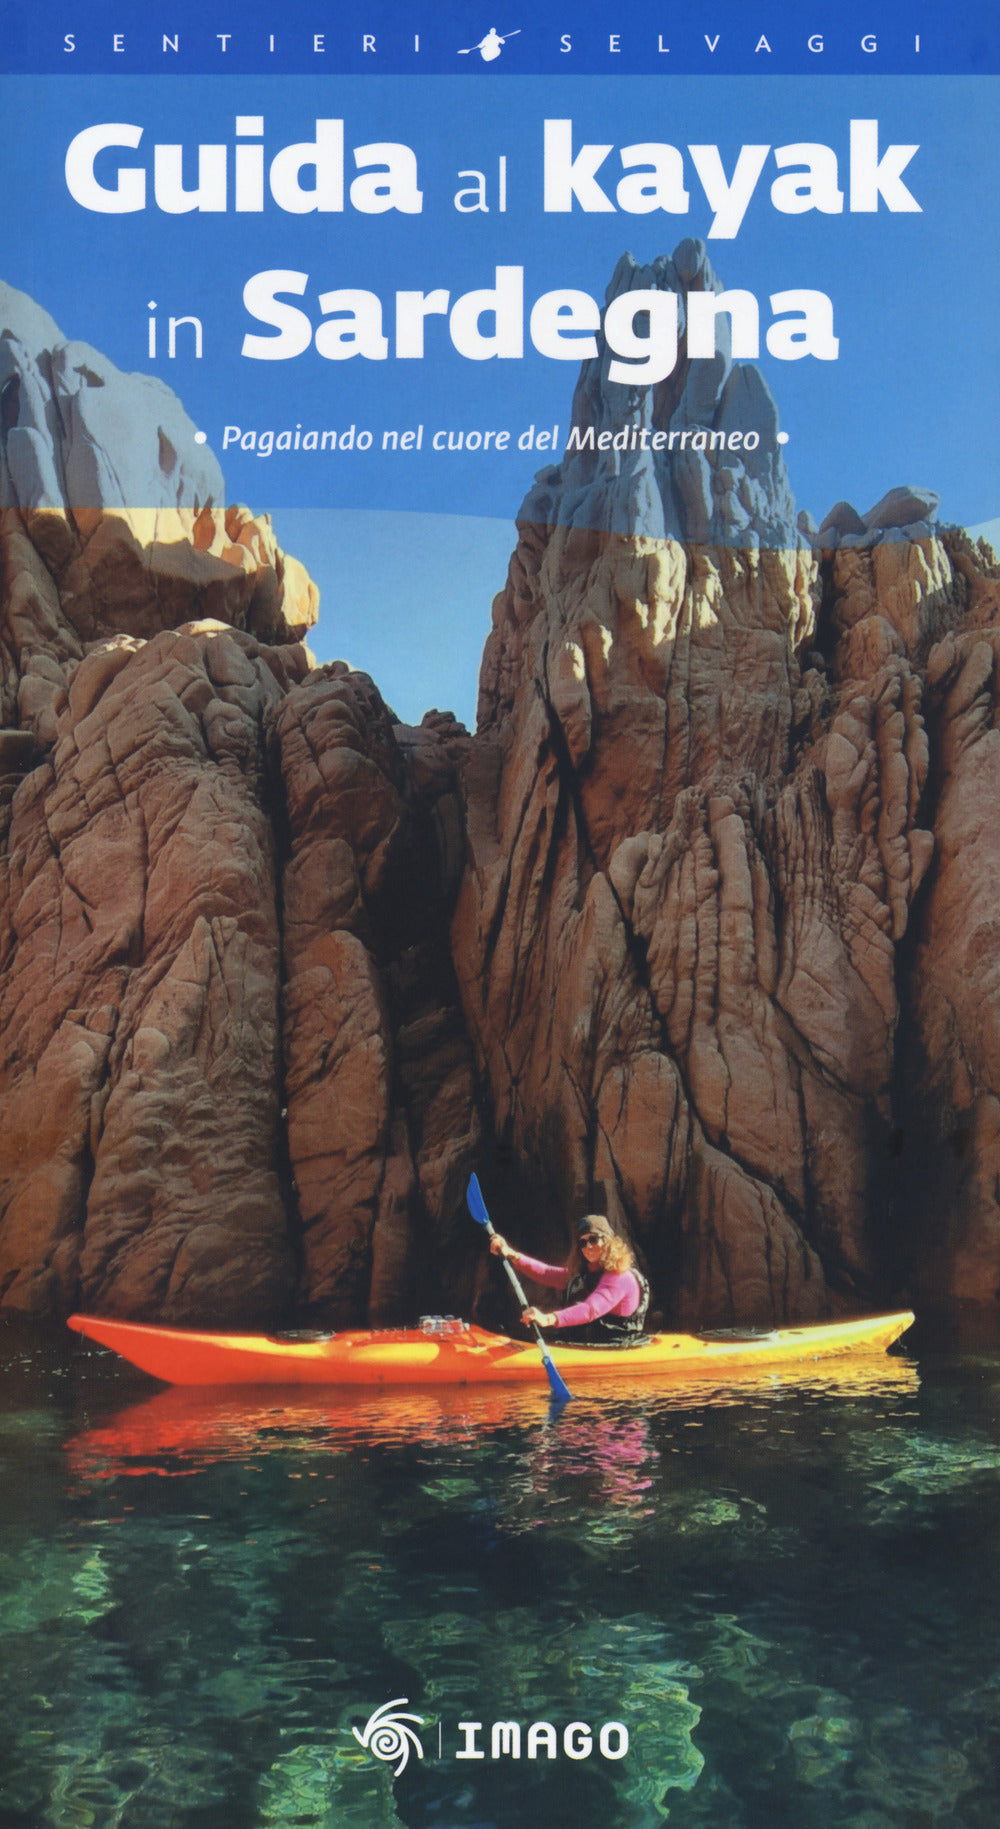 Guida al kayak in Sardegna. Pagaiando nel cuore del Mediterraneo.